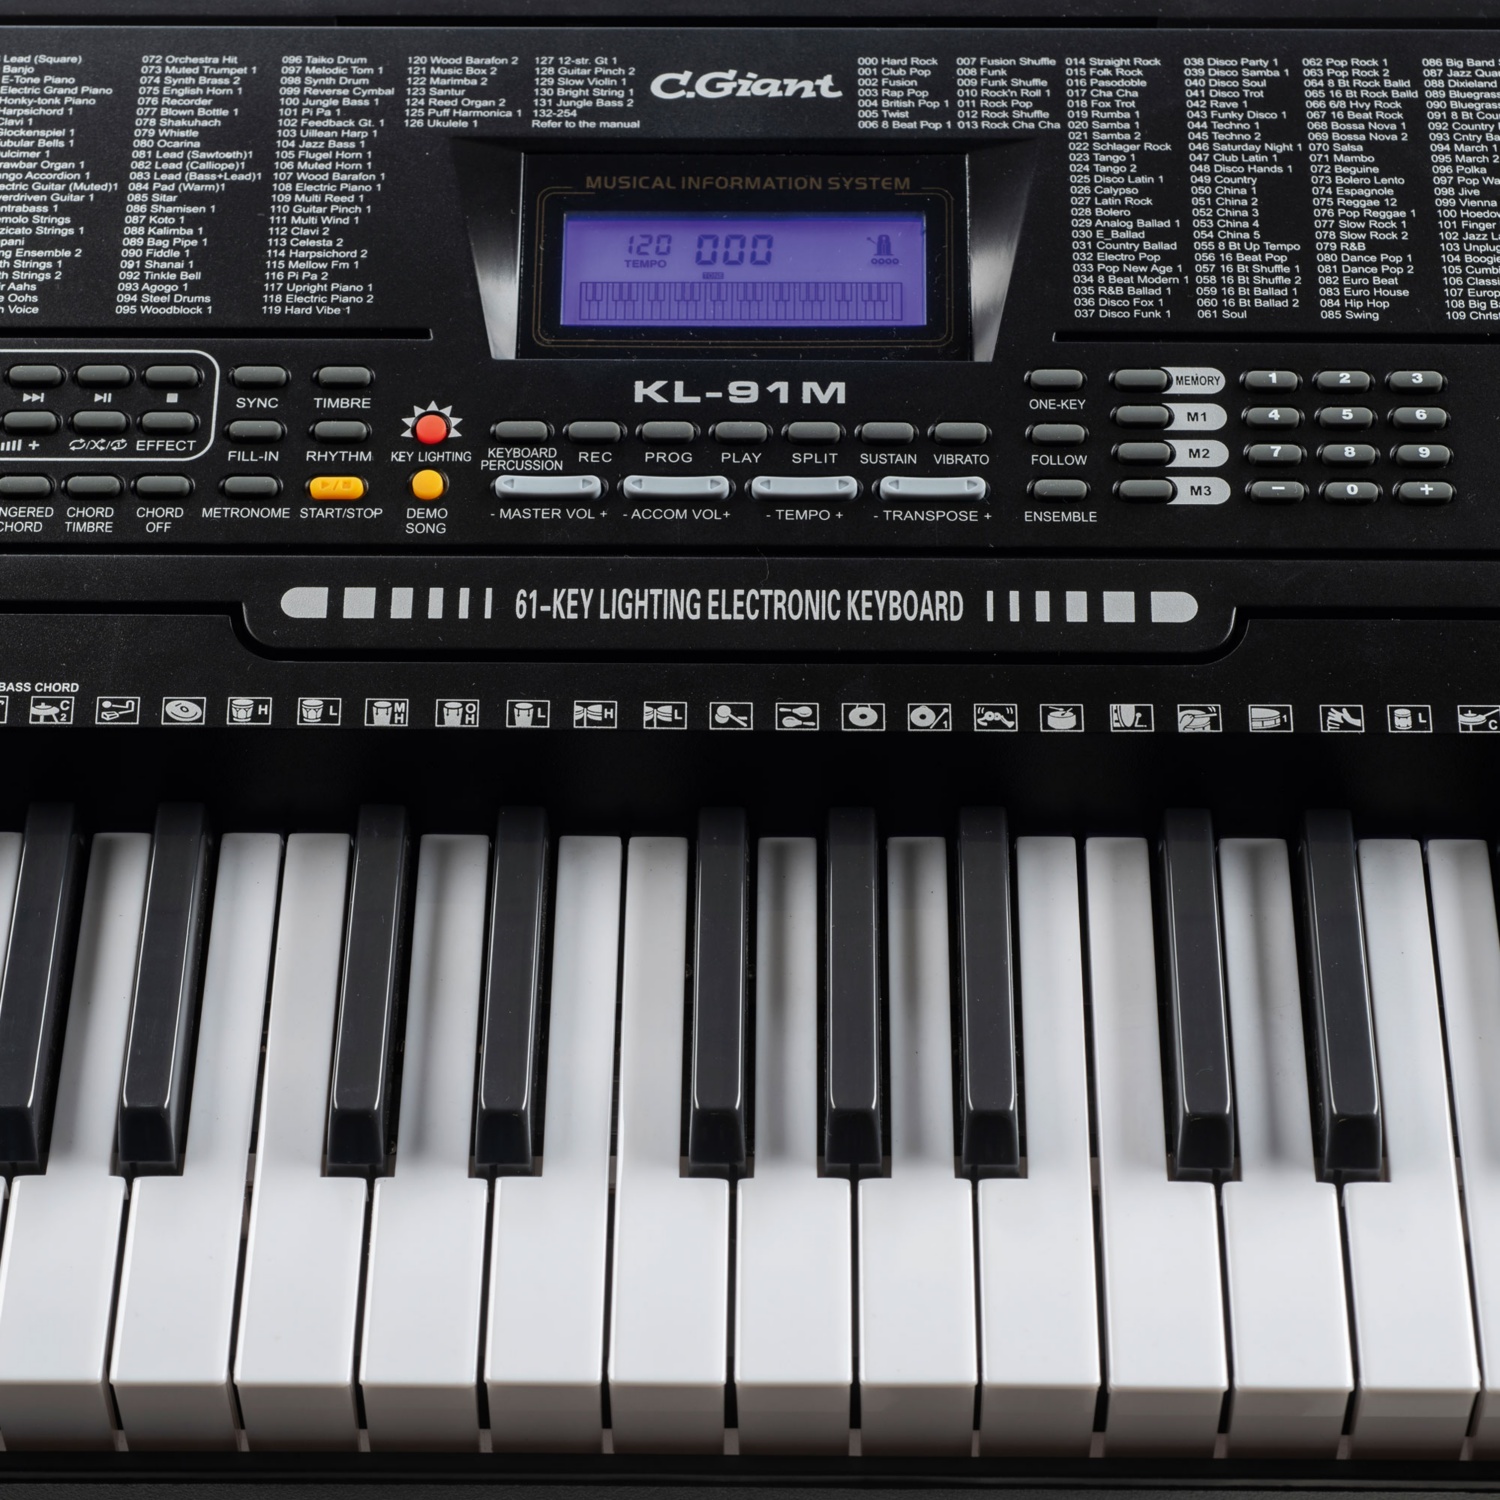 C. GIANT Keyboard